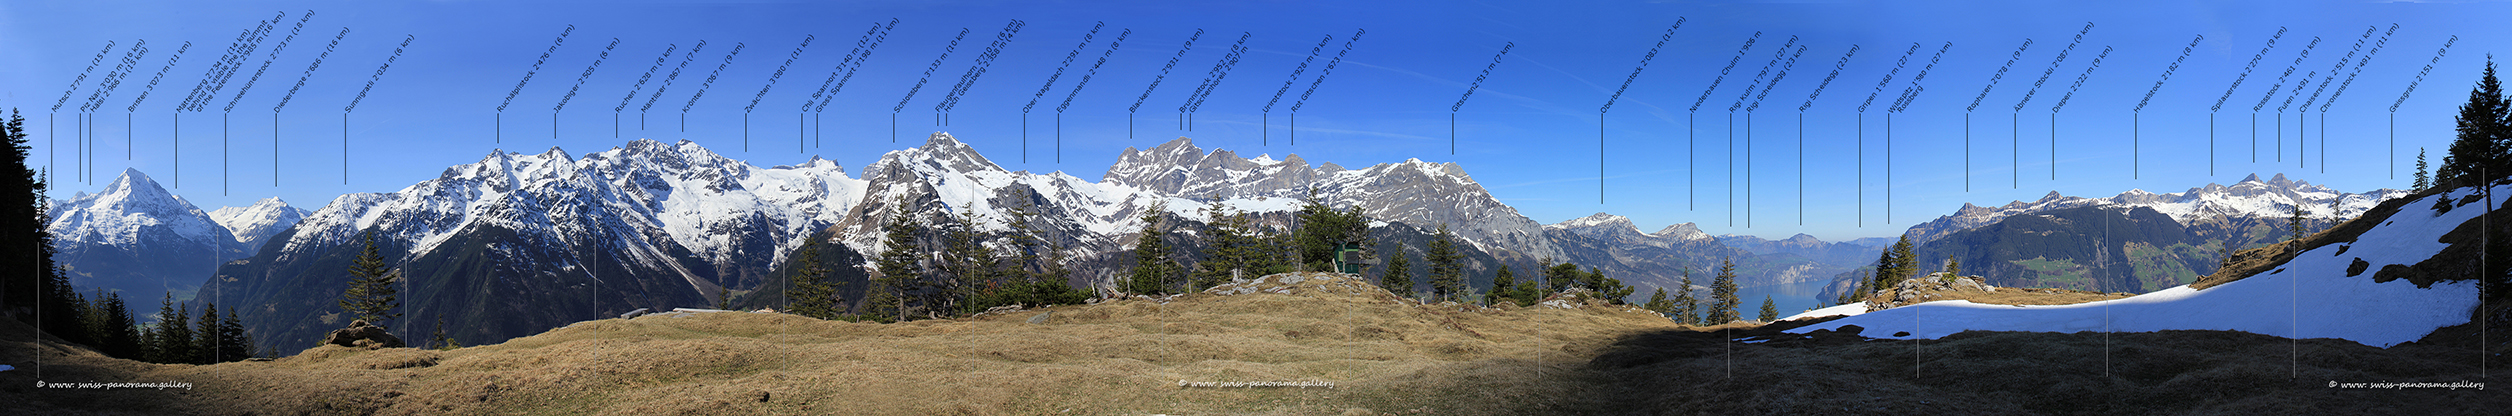 Erstfeld Schattdorf Schilt panorama beschriftet Urner Alpen